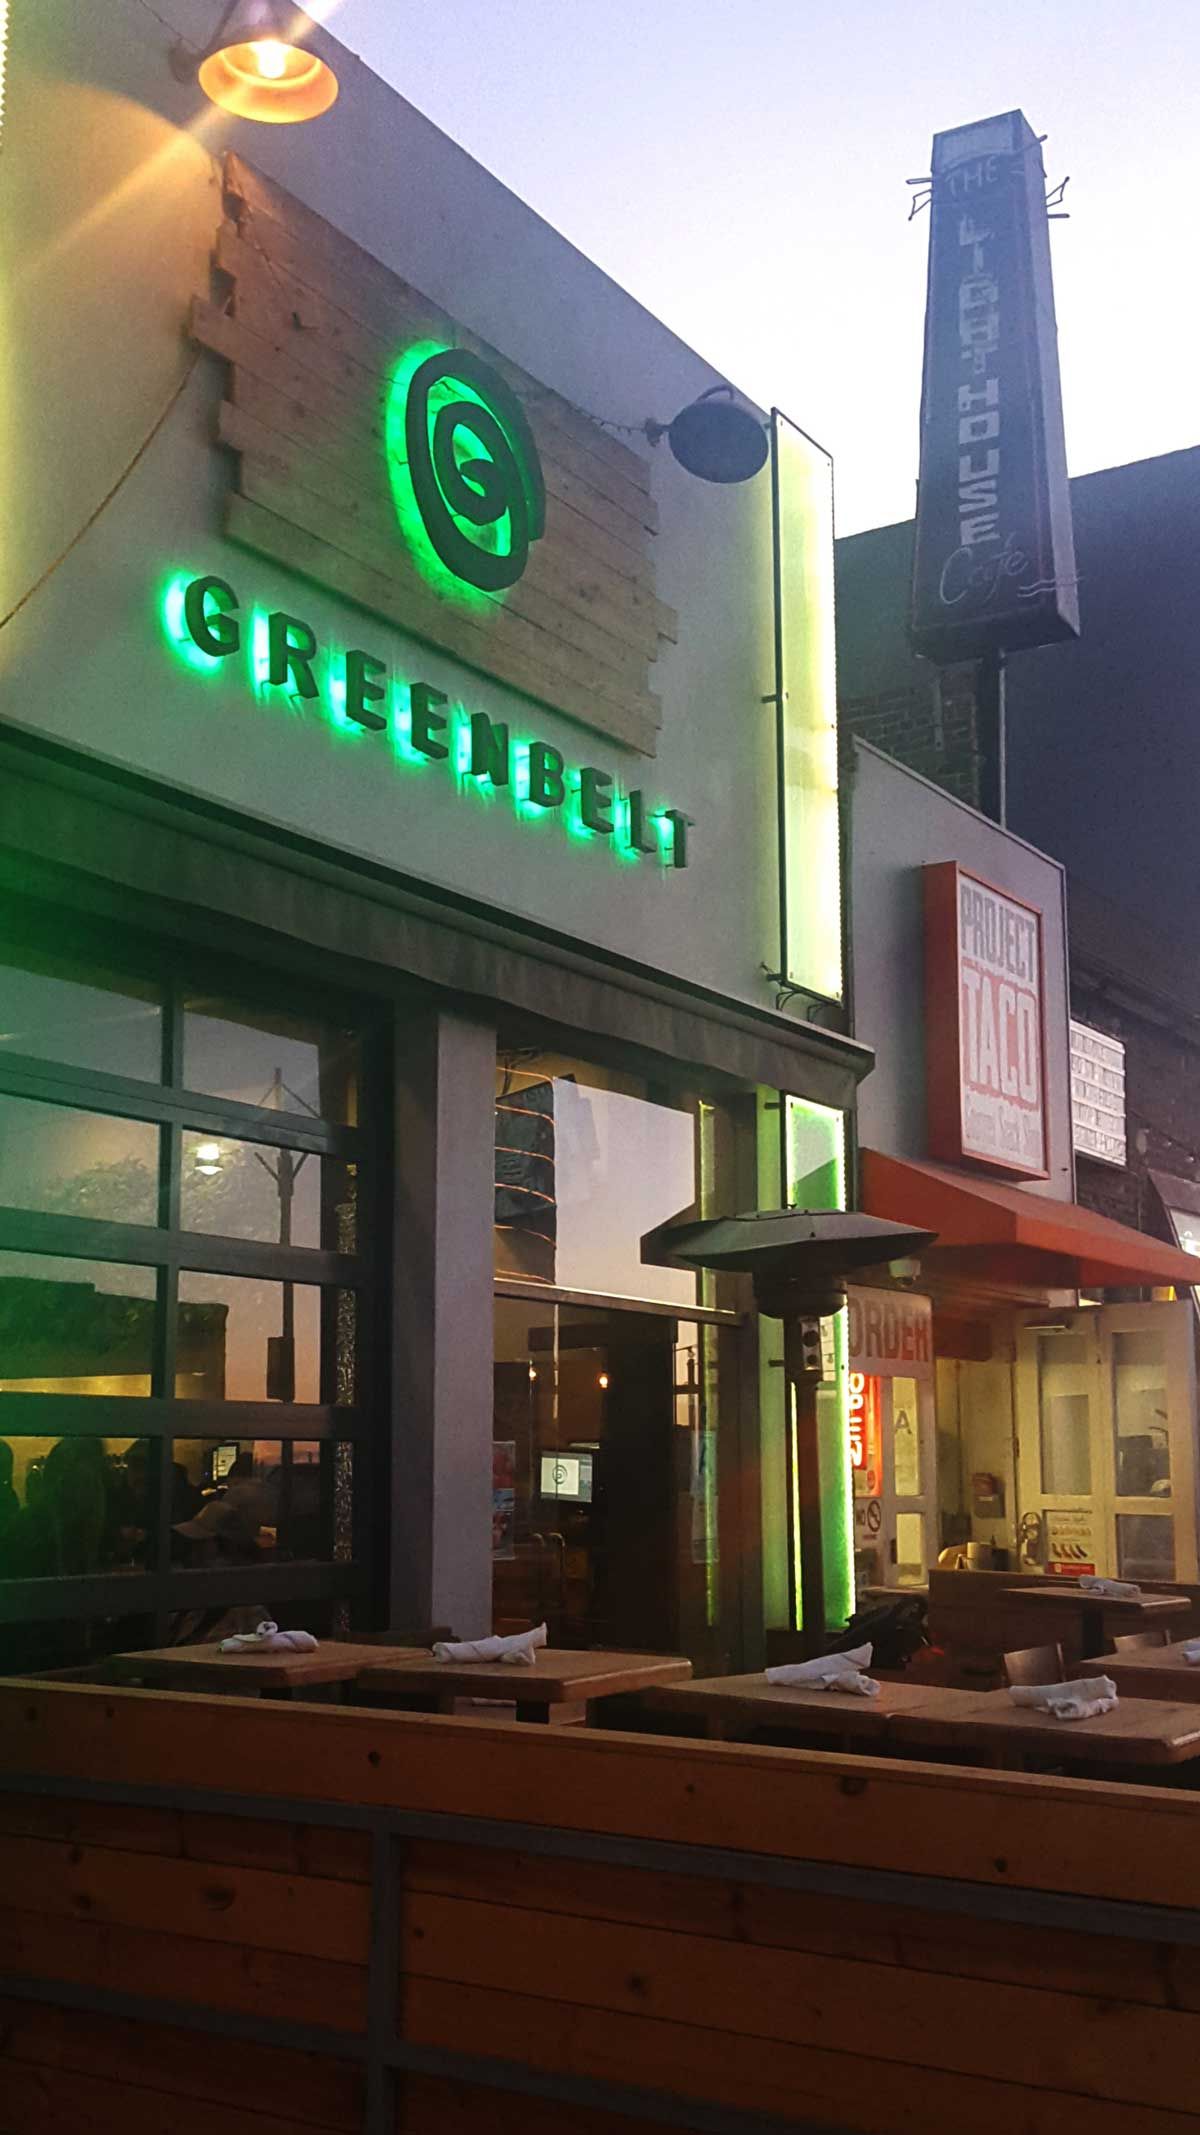 Greenbelt Restaurant